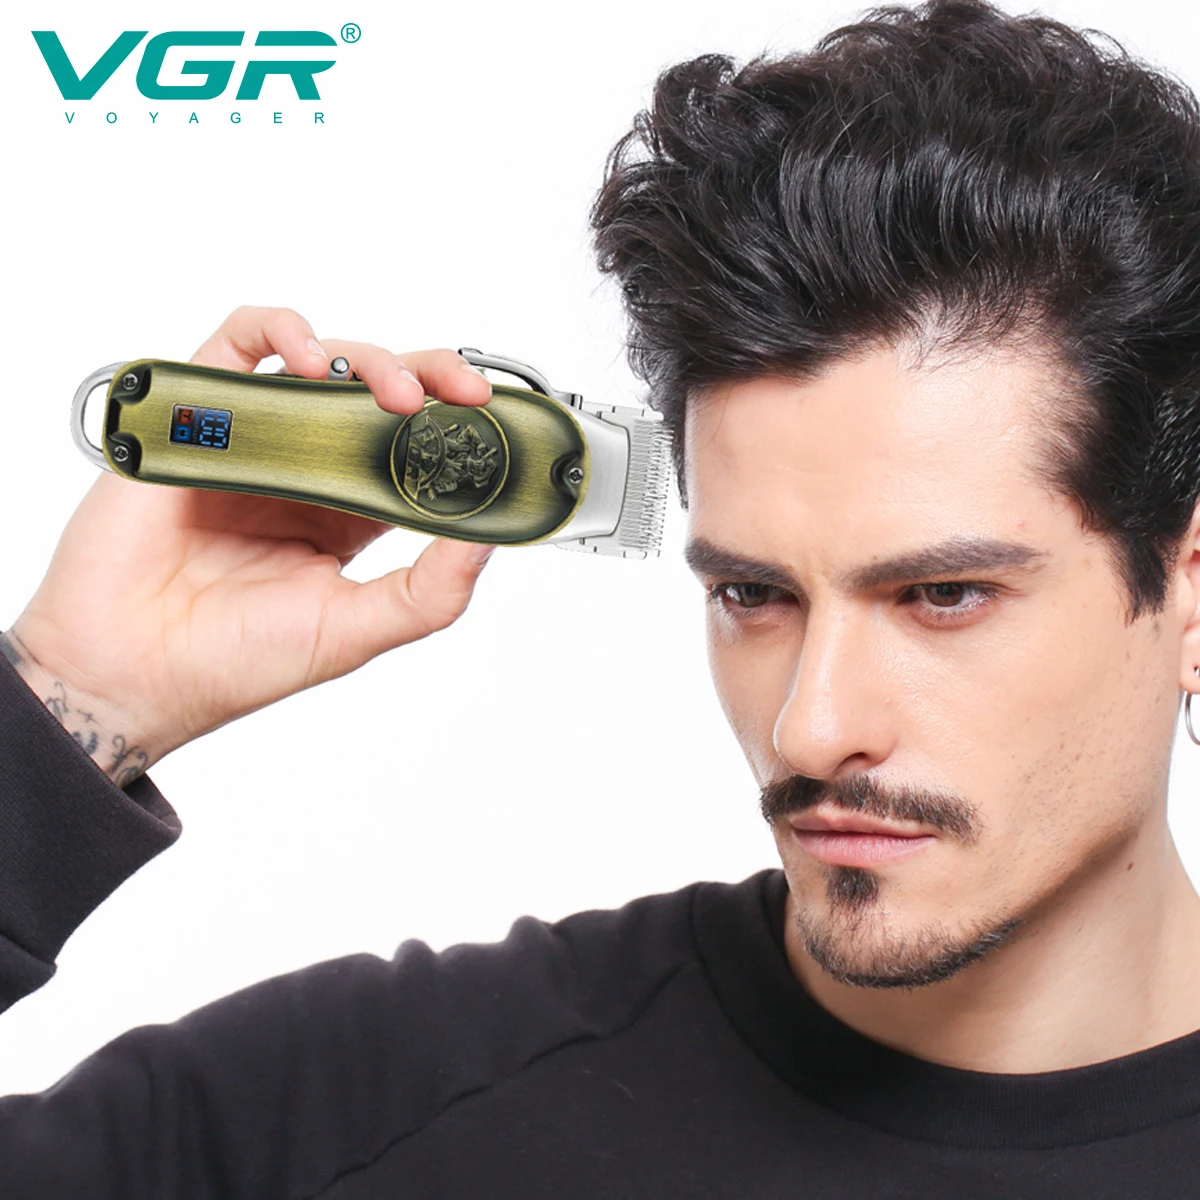 VGR שיער גוזם שיער מקצועי קליפר מתכת מכונת תספורת אלחוטית נטענת מתכוונן גוזם שיער לגברים V-658 - 5